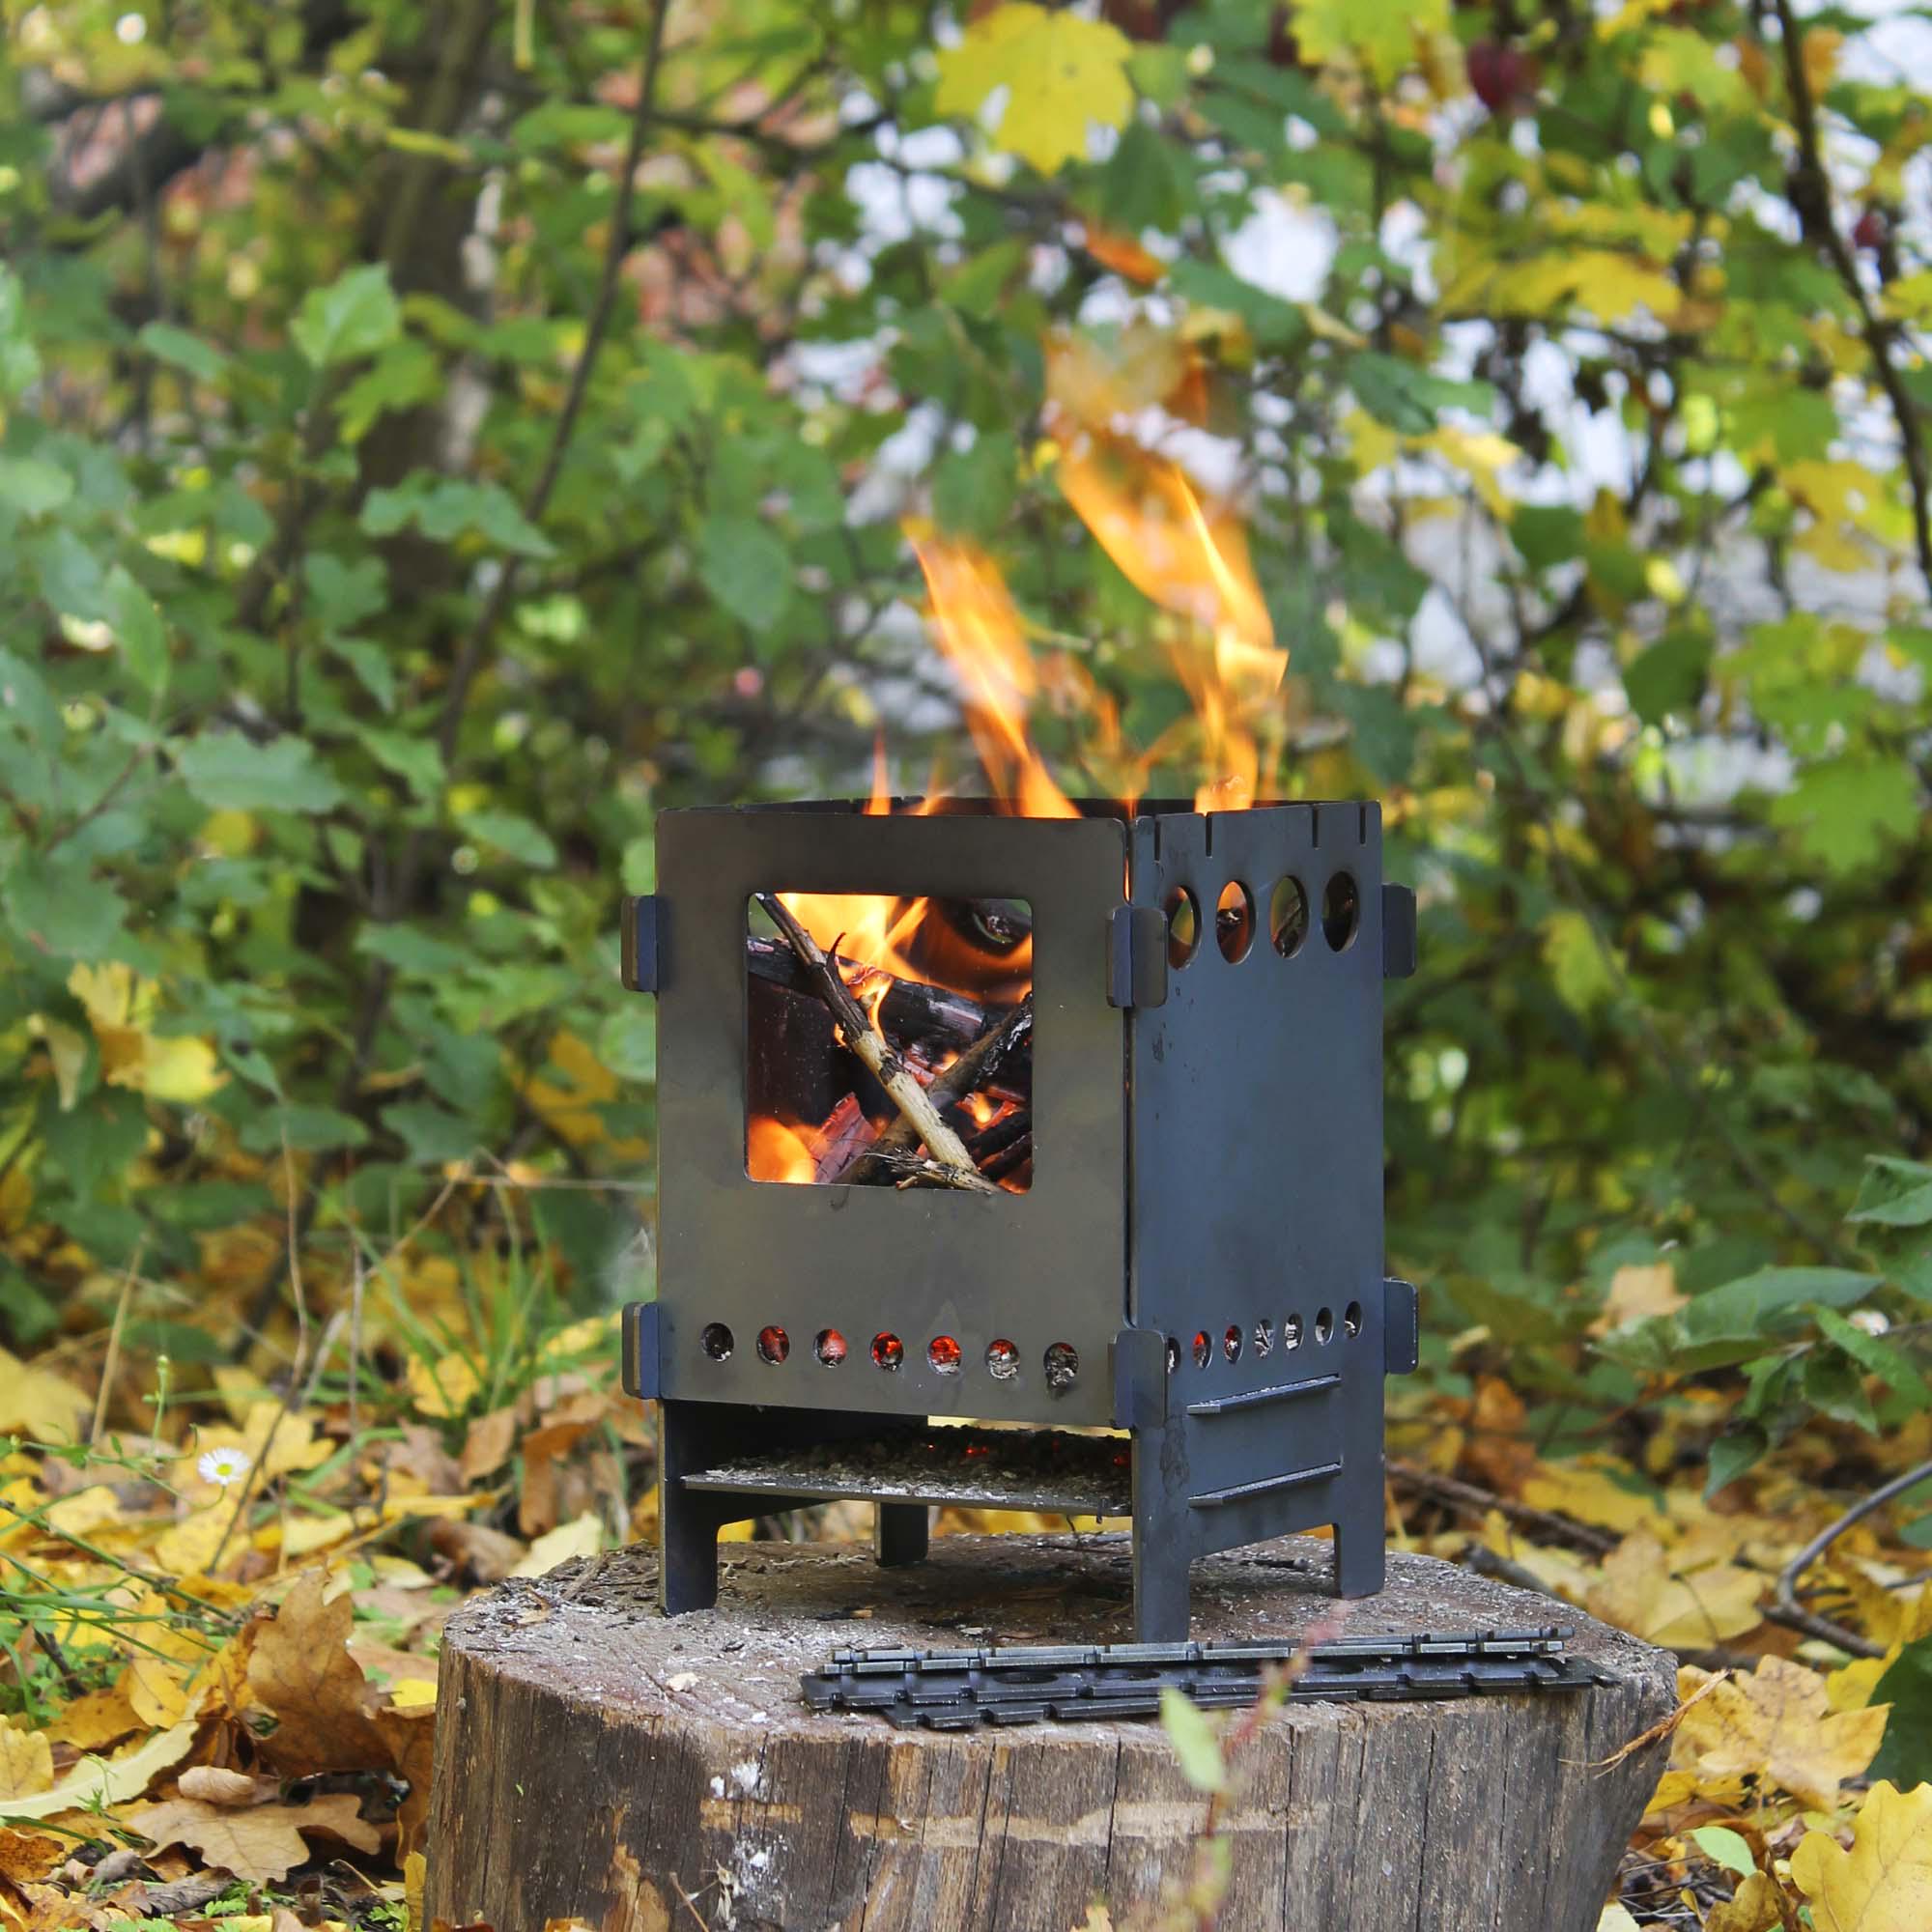 Не суйте это устройство в печь! Как «Вечное полено» снижает КПД горения дров